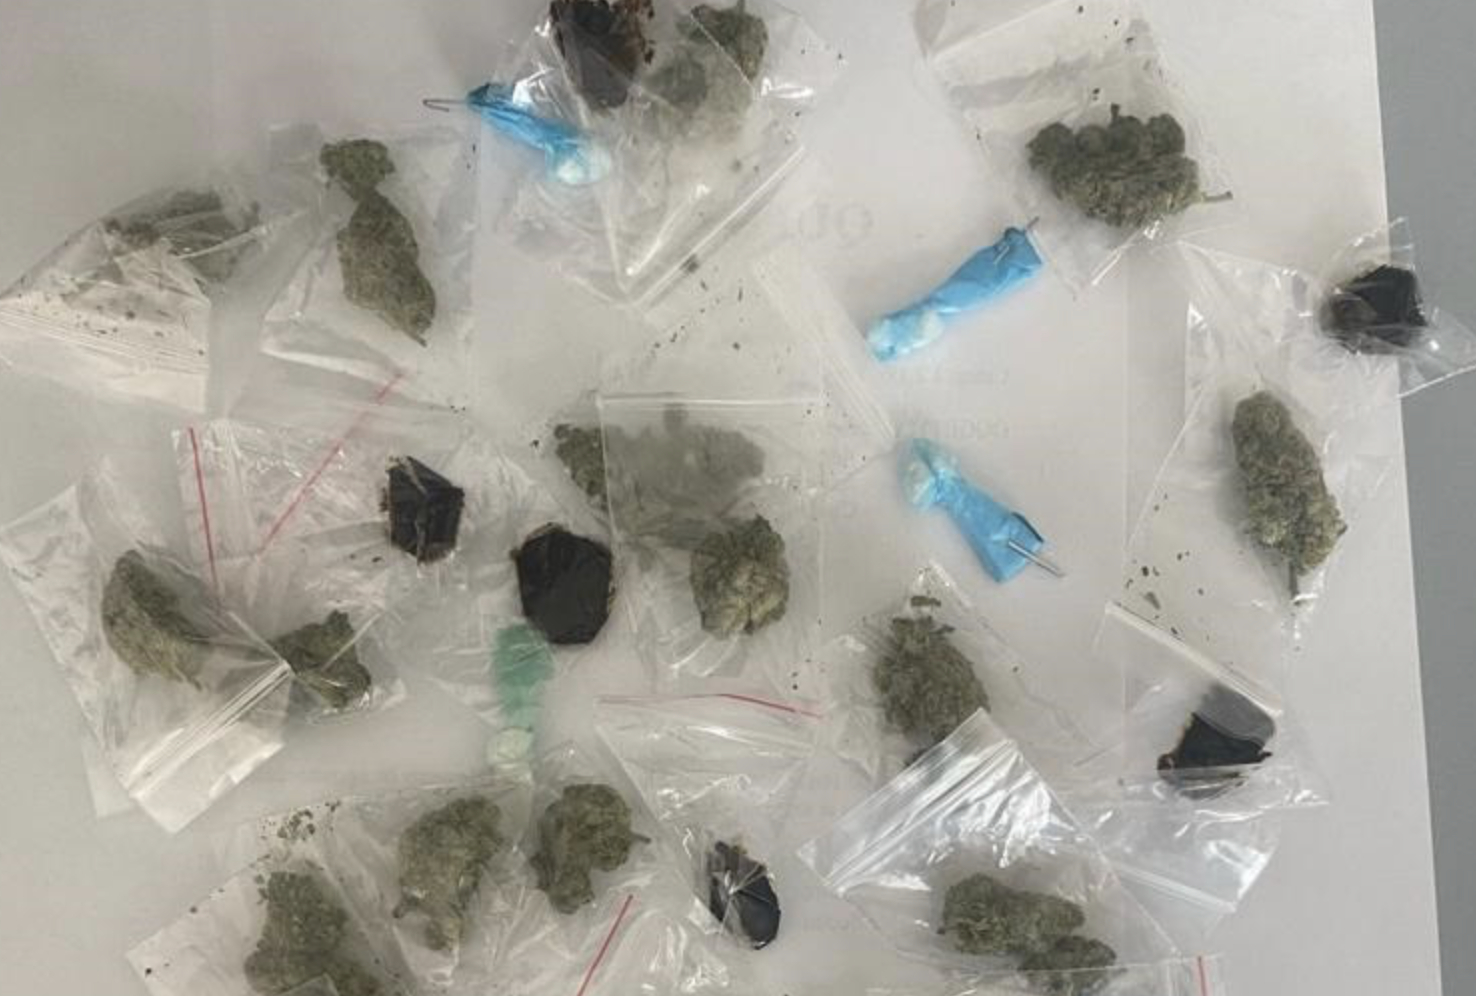 Recuperate a Siracusa 36 dosi di droga: era nascosta in un cespuglio